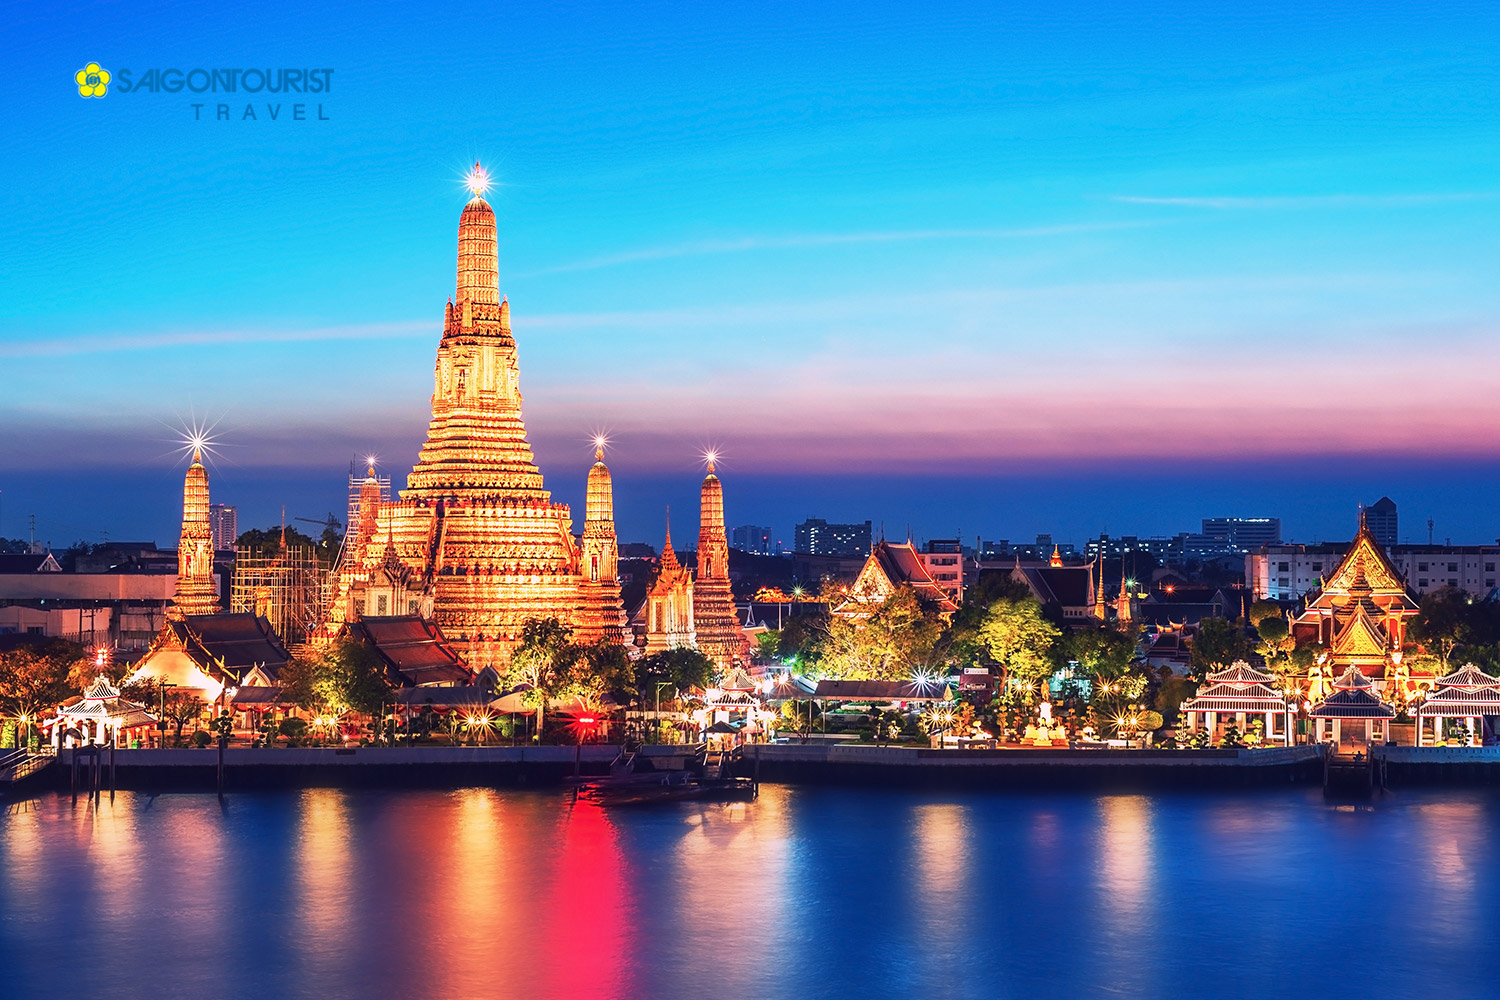 Du lịch Thái Lan [Bangkok - Pattaya] thưởng thức Buffet 5* trên du thuyền sông Chaopaya